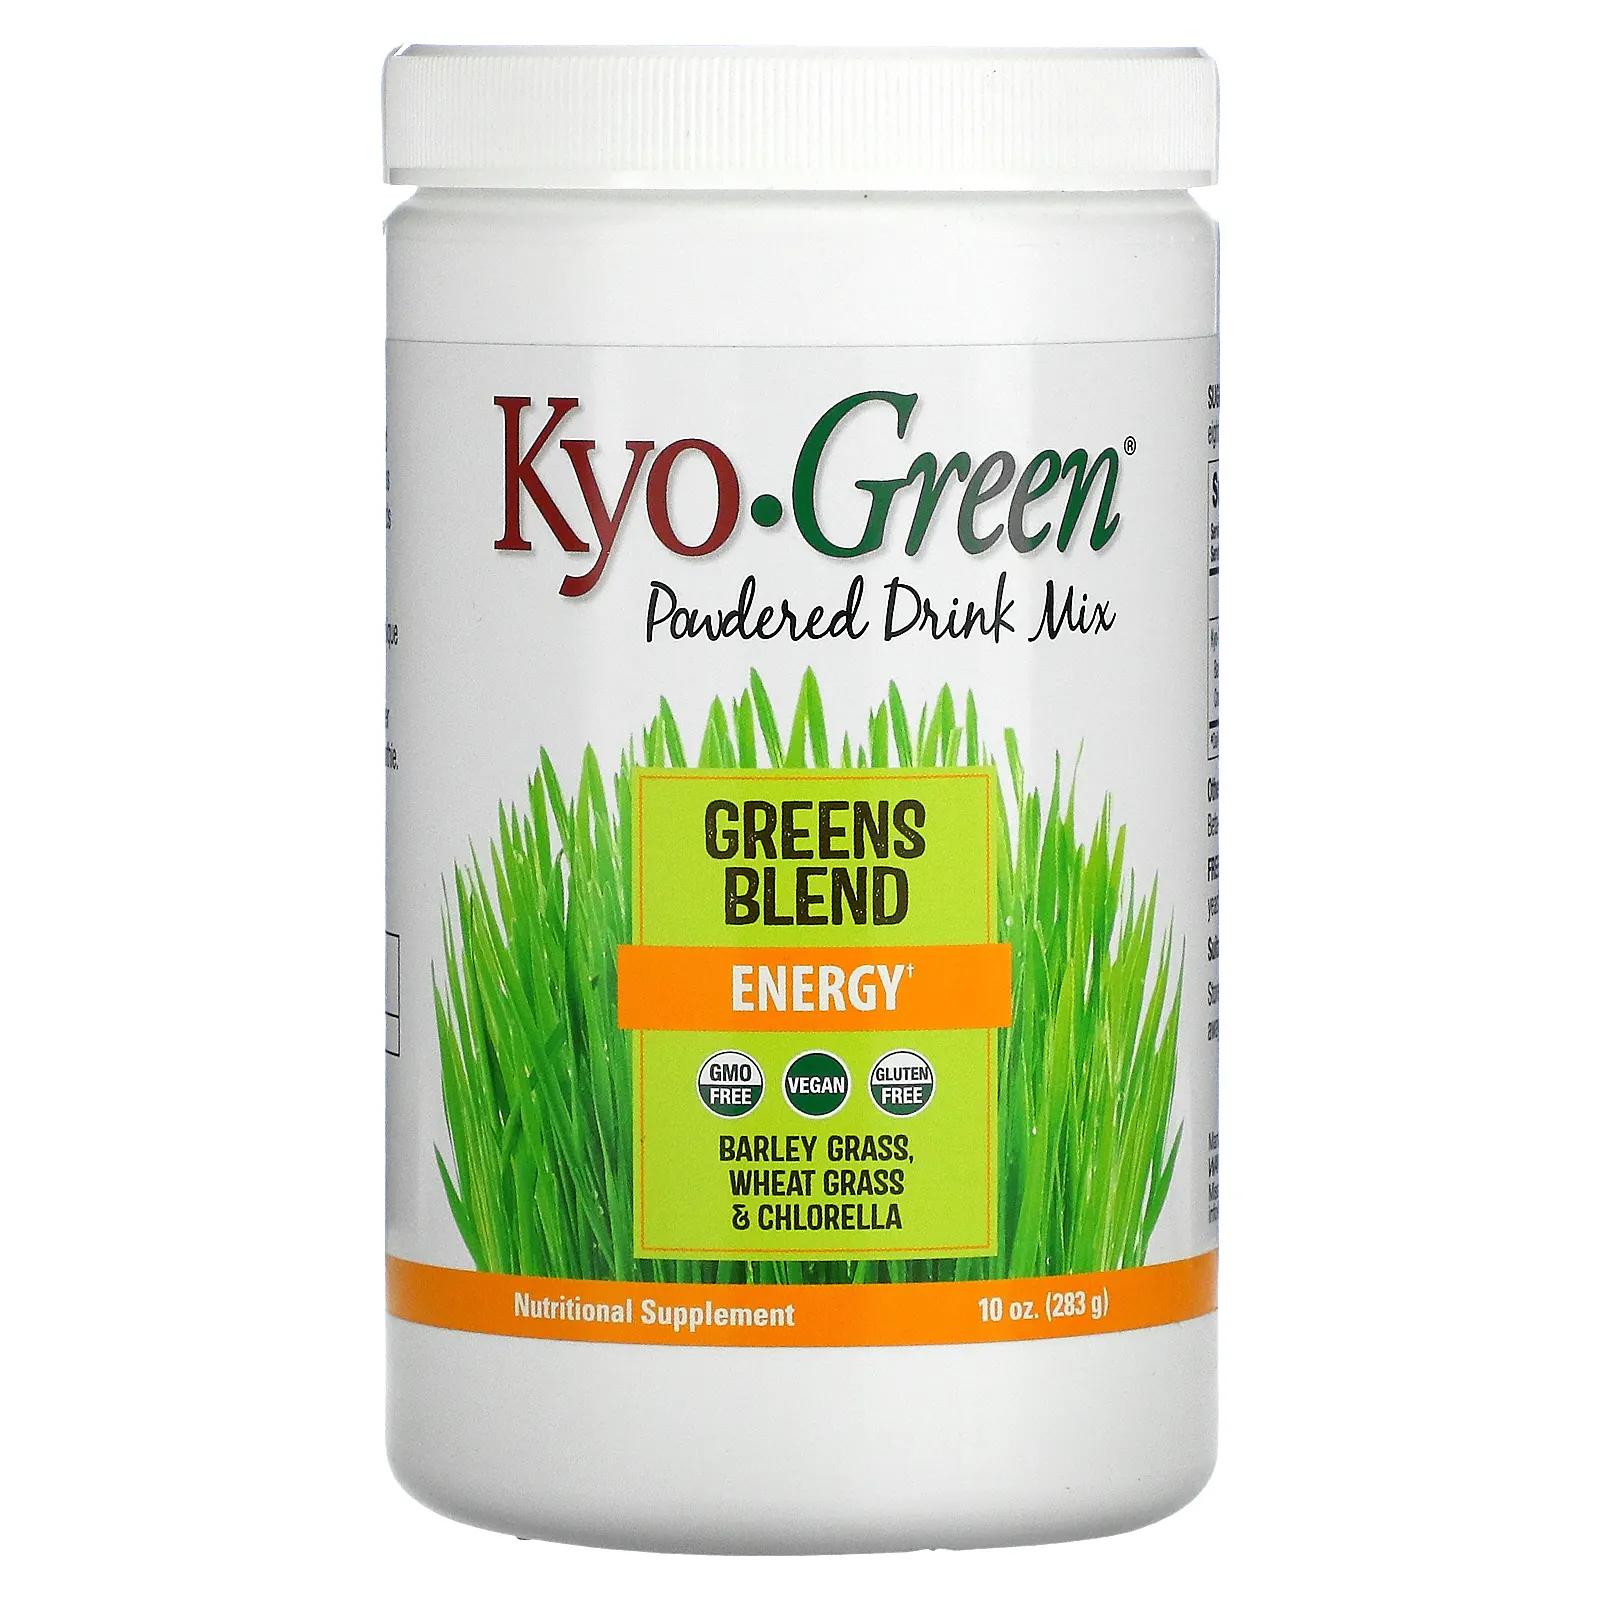 цена Kyolic Kyo-Green сухая смесь для напитка 10 унций (283 г)